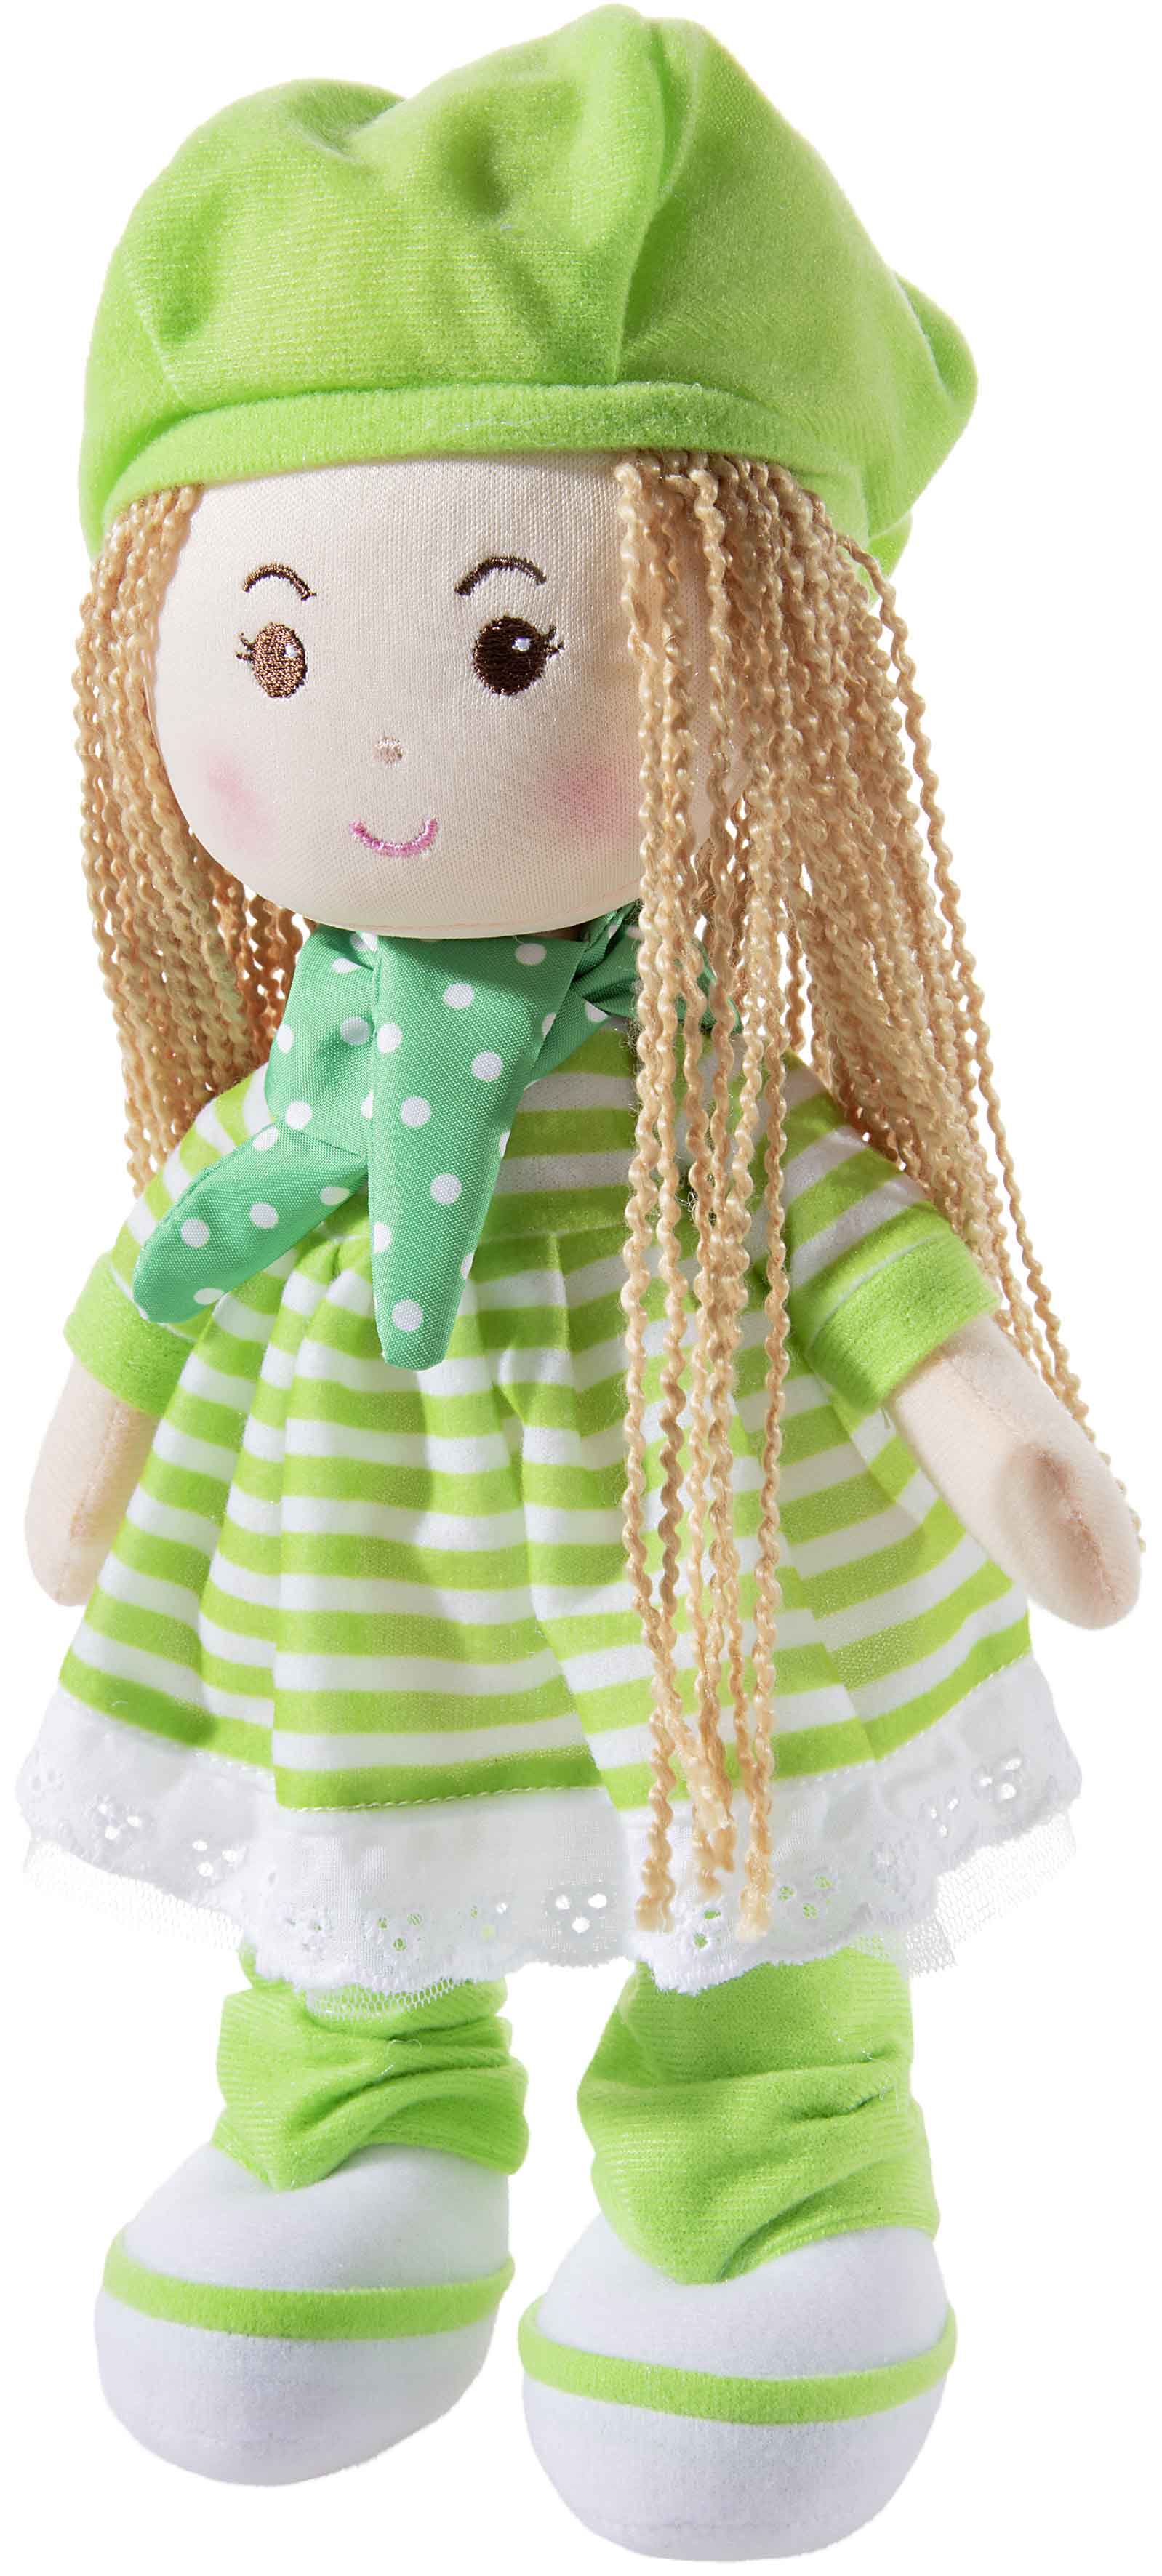 Heunec Poupetta Käferkind mit blonden Haaren, grüner Mütze und grün-weiß gestreiftem Kleidchen